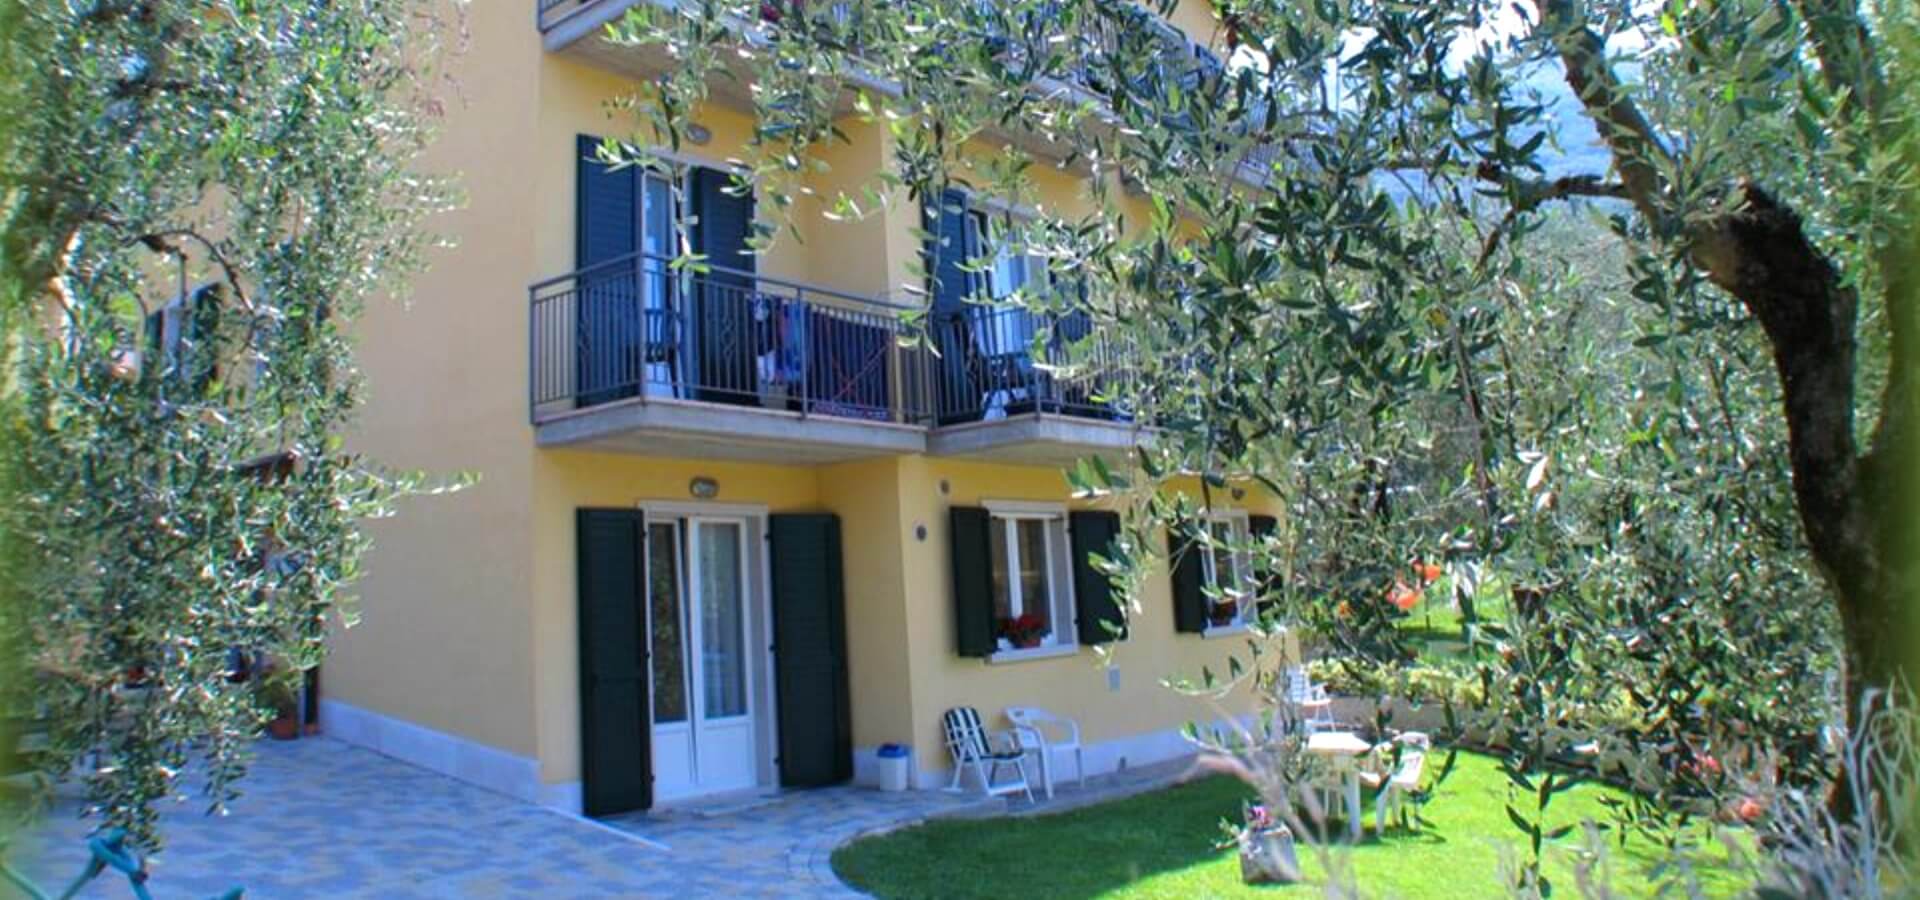 Foto di Appartamenti Andreis a Malcesine con balcone vista lago, uso giardino e piscina